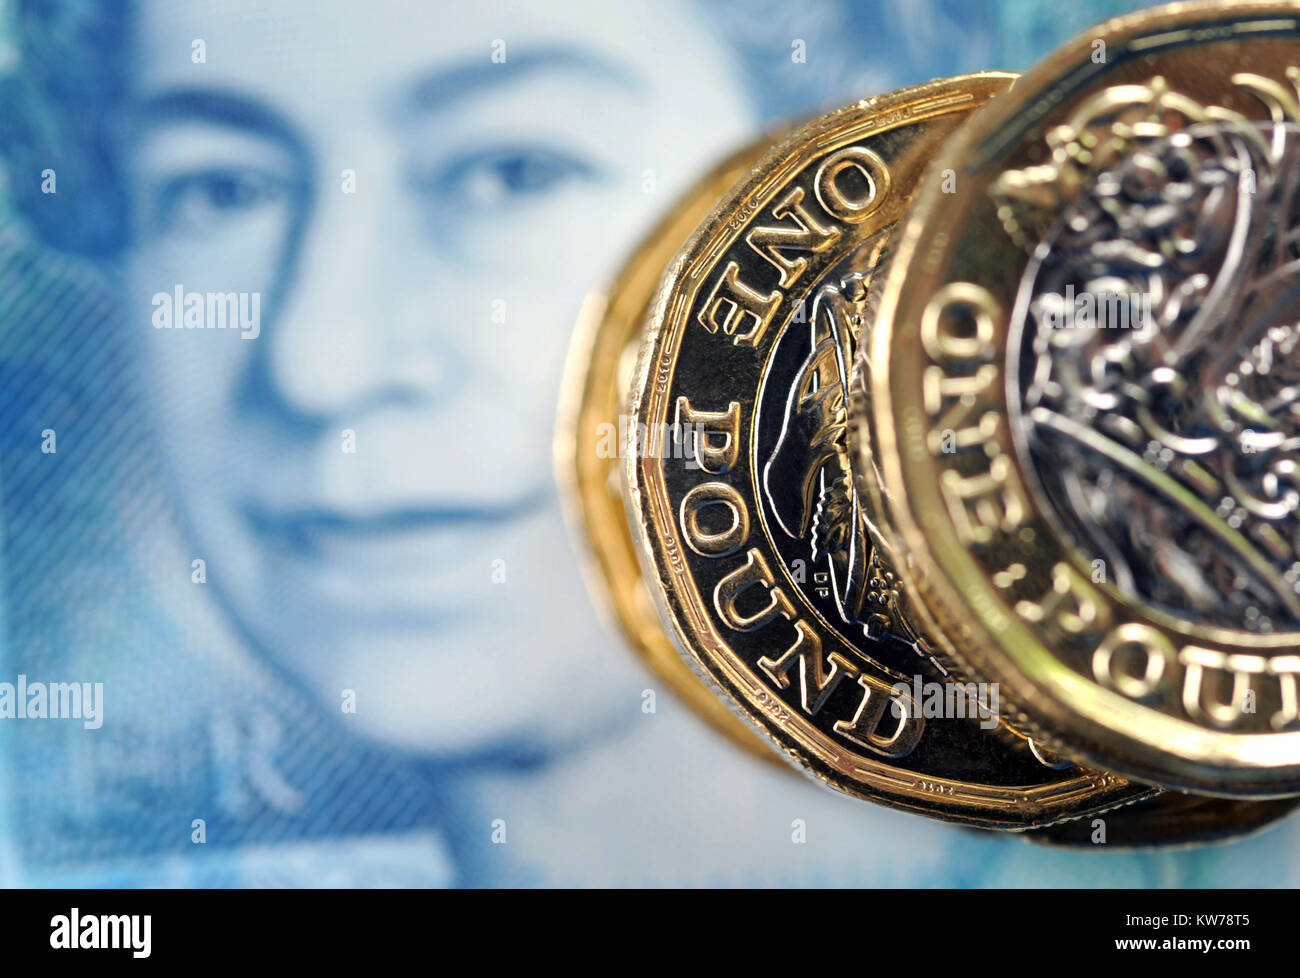 La nouvelle monnaie AVEC UNE LIVRE NOUVEAU €5 NOTE RE FINANCES BREXIT SALAIRES REVENUS ETC PRÊTS HYPOTHÉCAIRES UK Banque D'Images